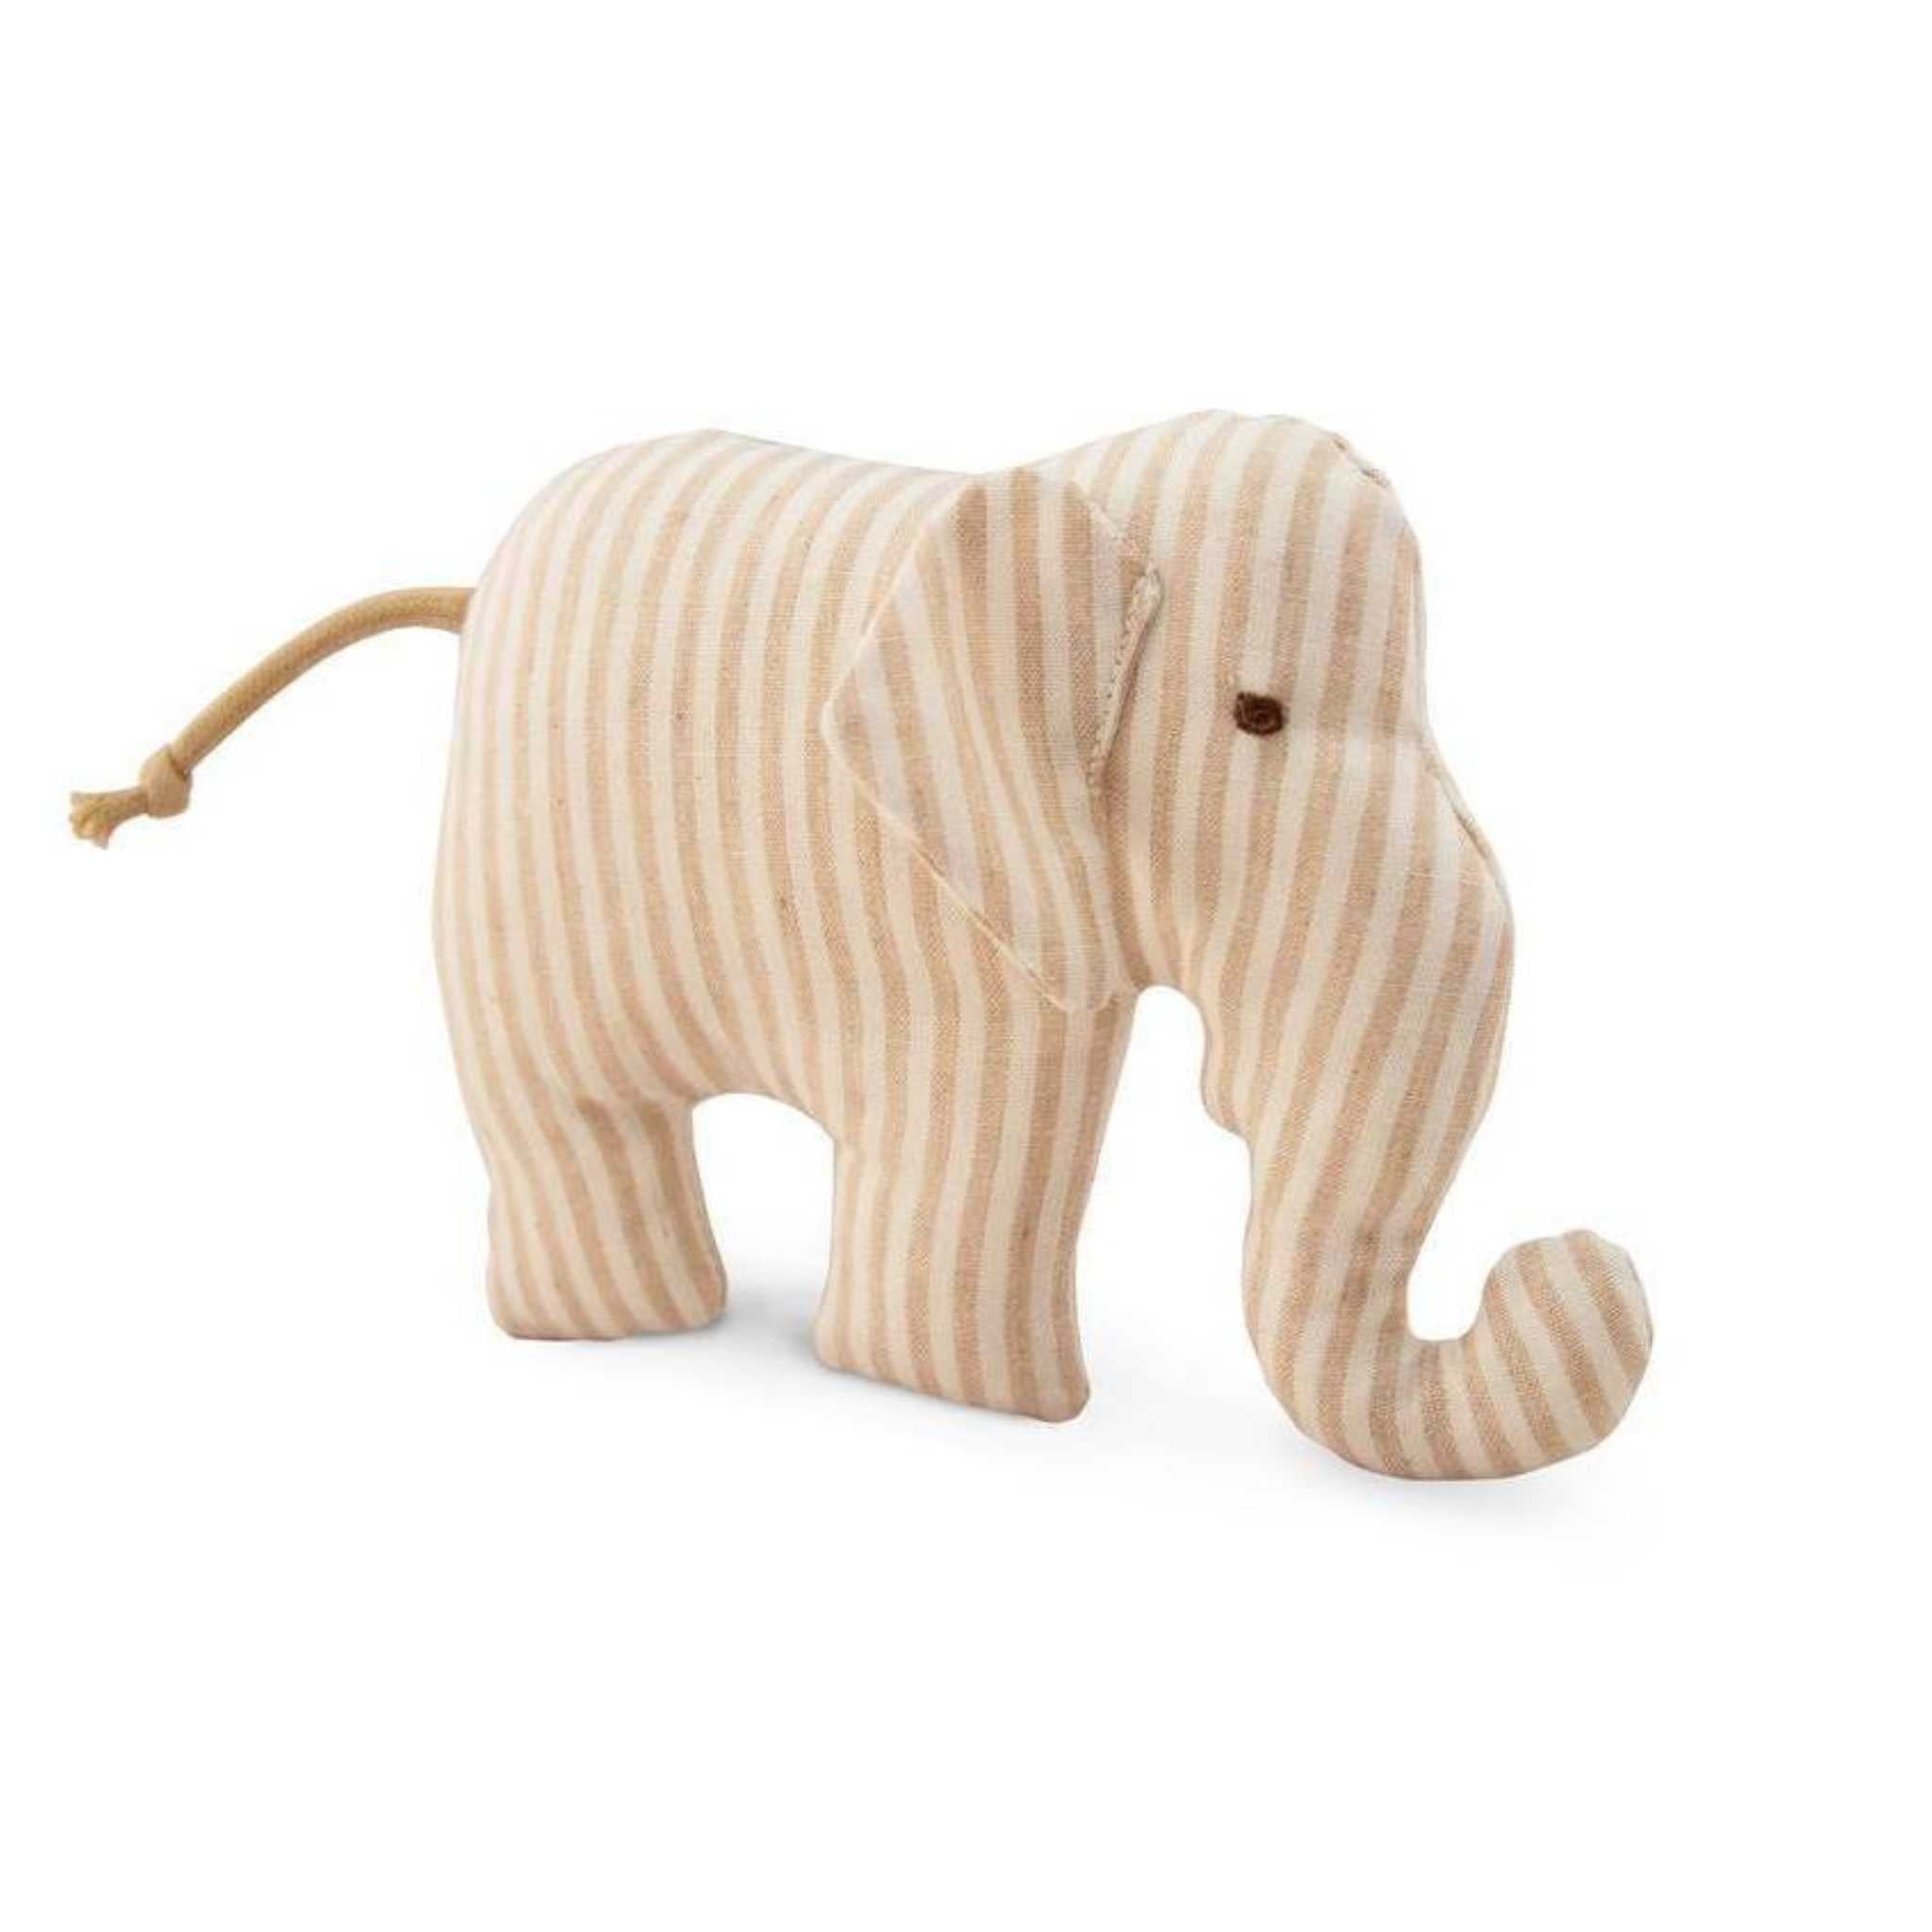 Senger-Naturwelt-Elephant-Graber-Beige-Striped